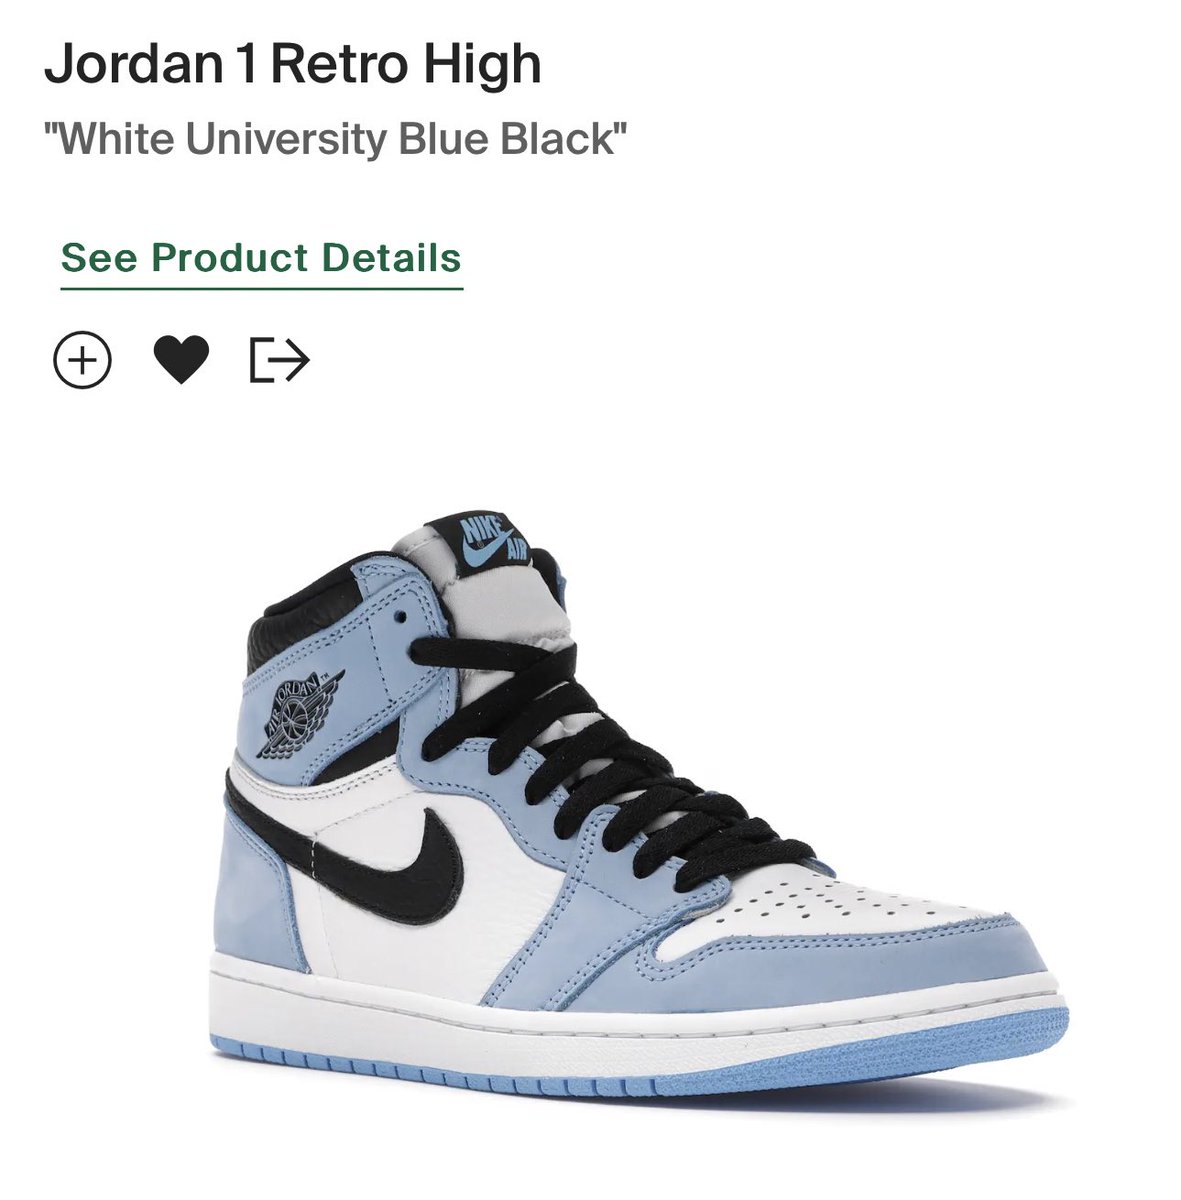 Jordan 4s or Jordan 1s?